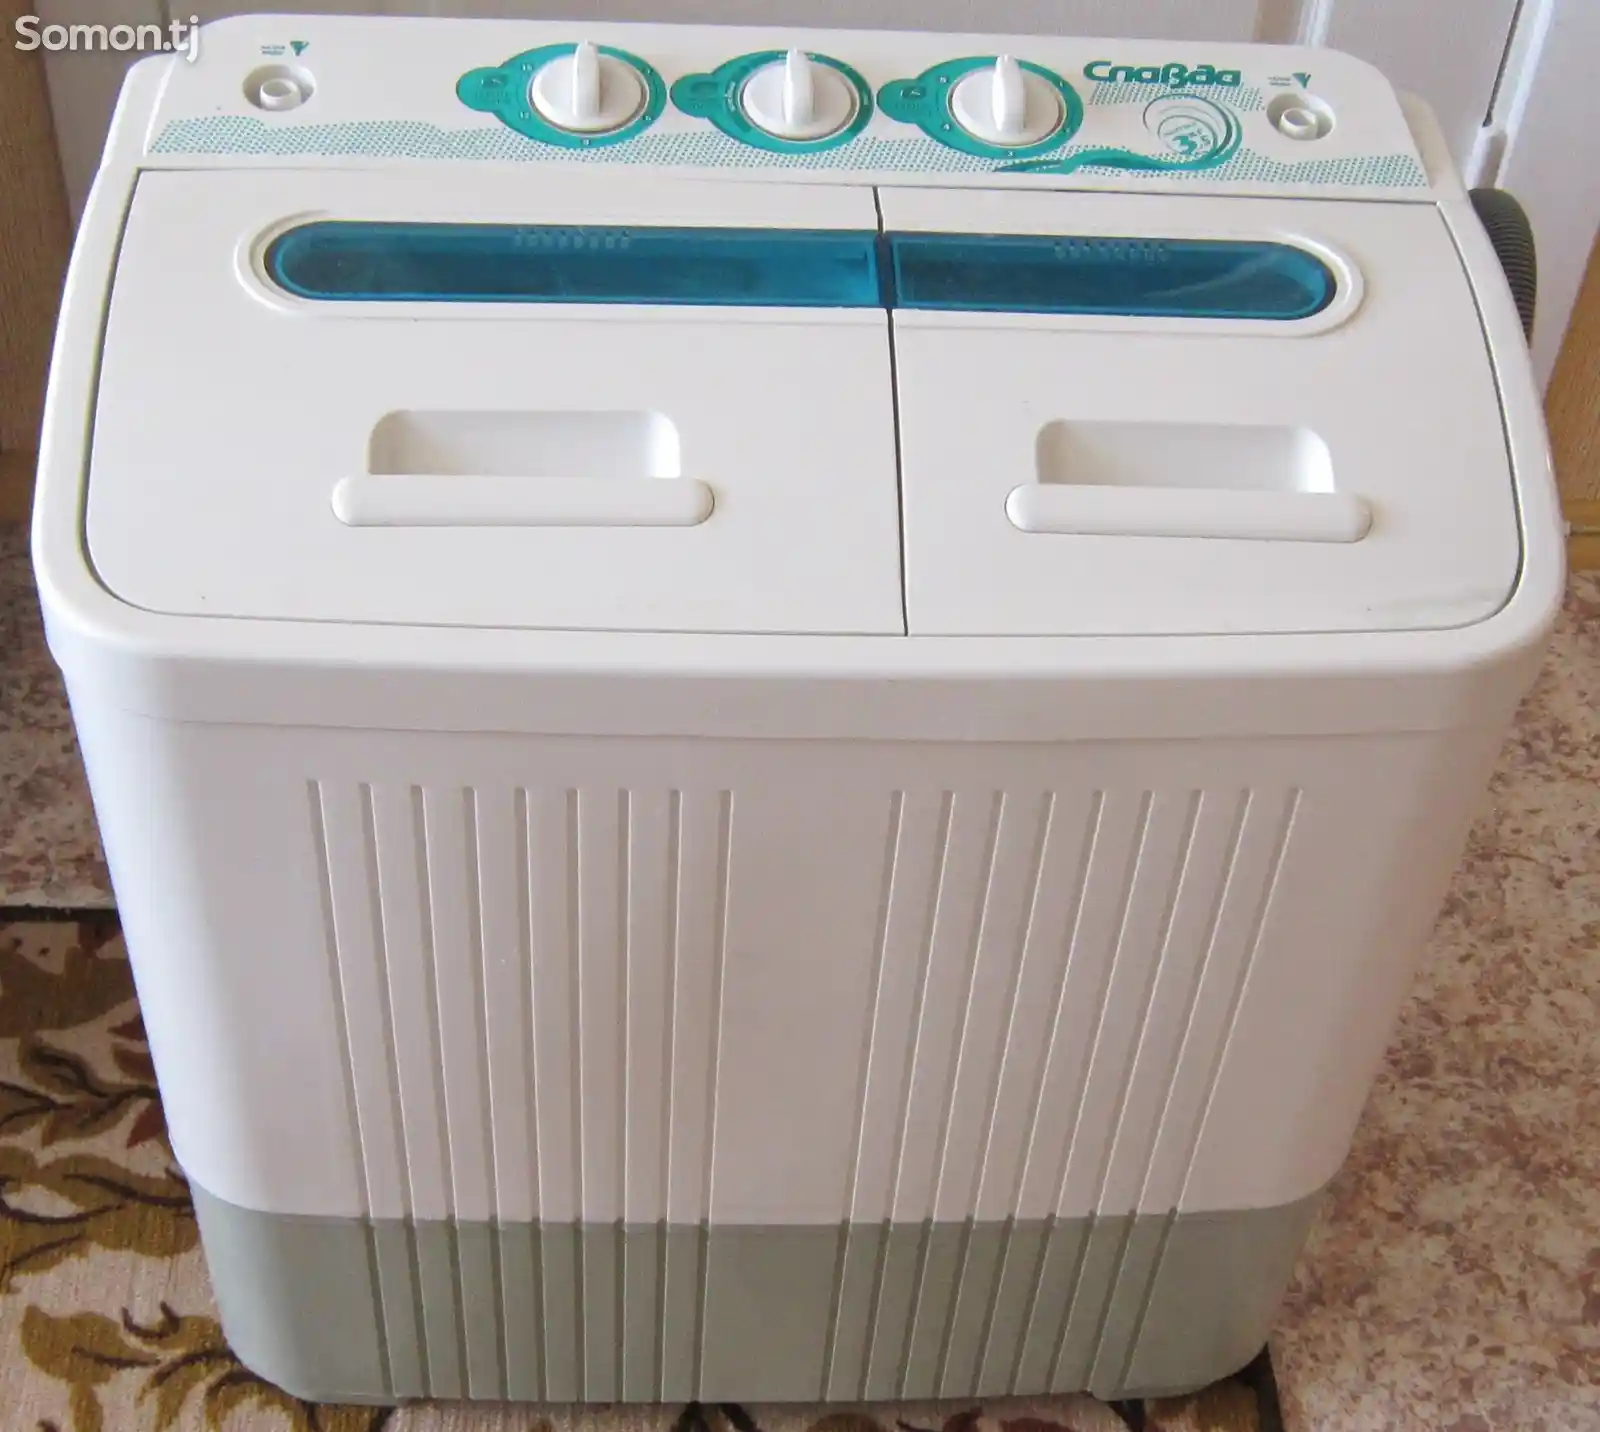 Ремонт стиральных машин полуавтомат-1